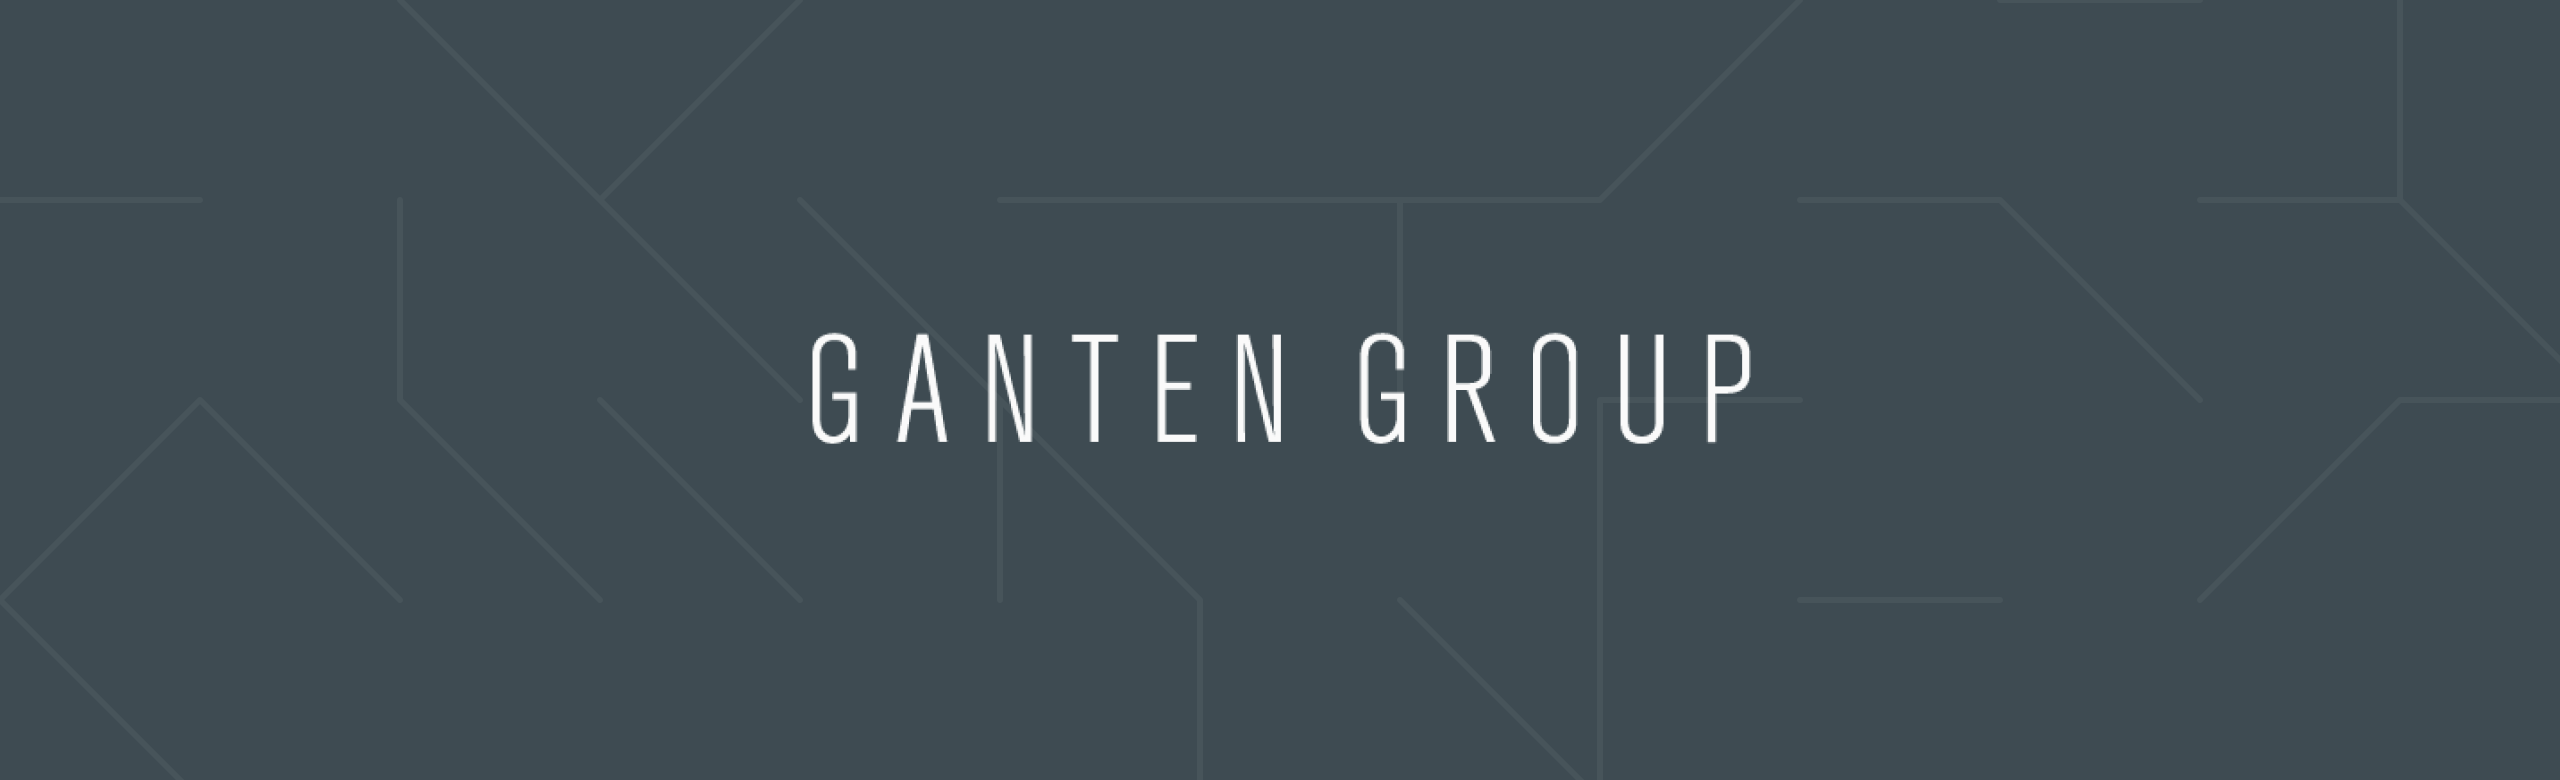 Ganten Group Inner